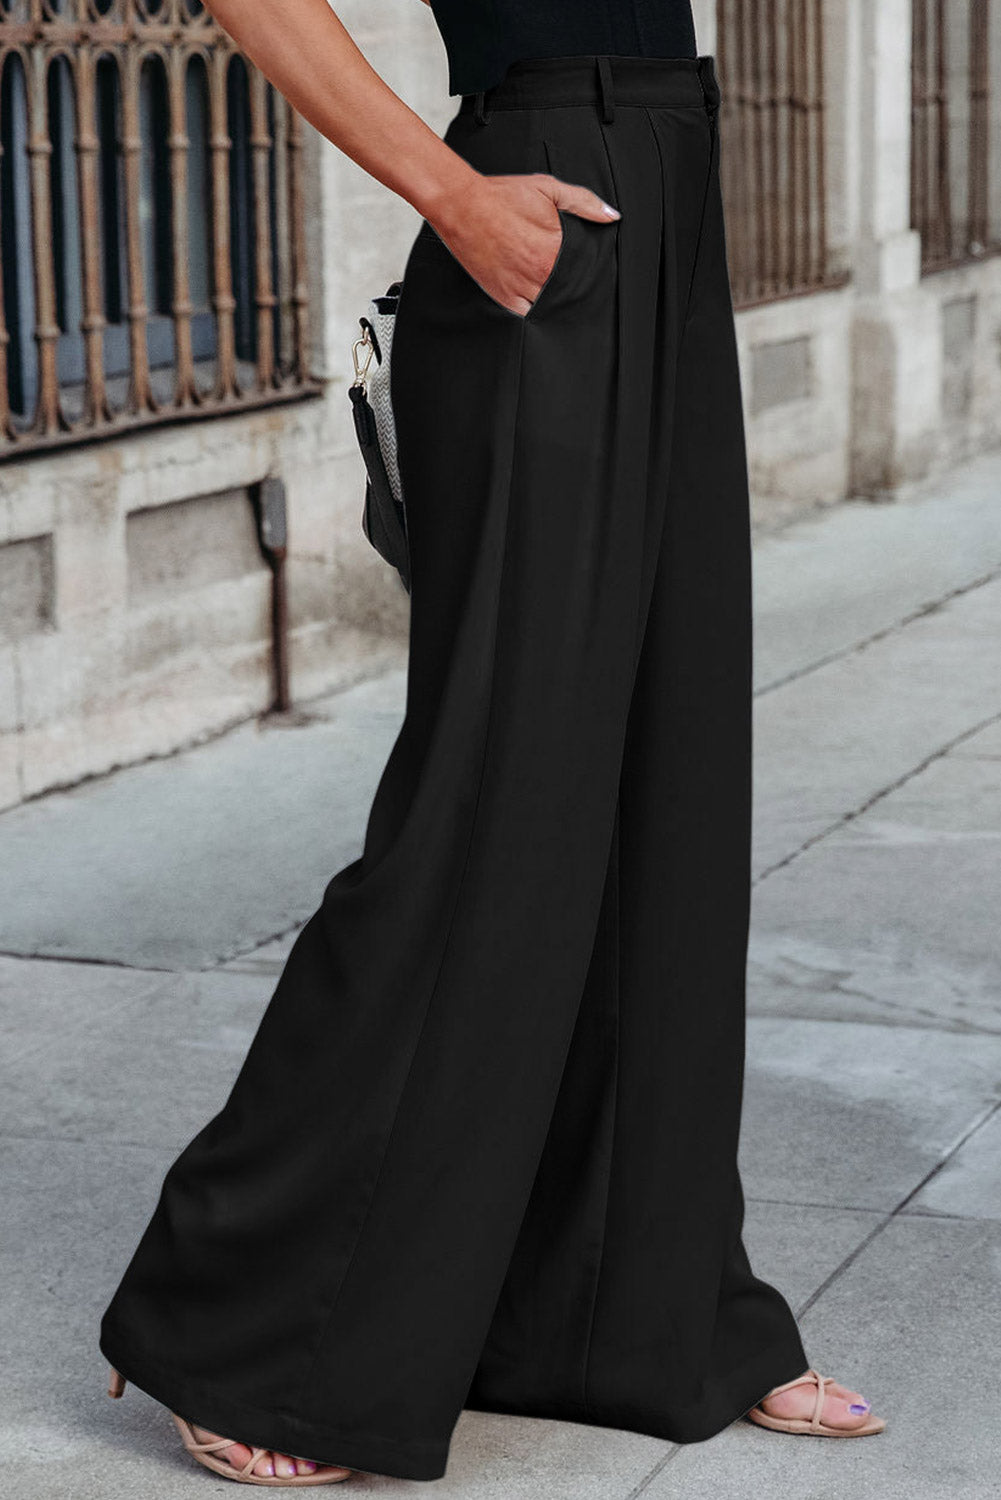 Crne plisirane elegantne hlače širokih nogavica